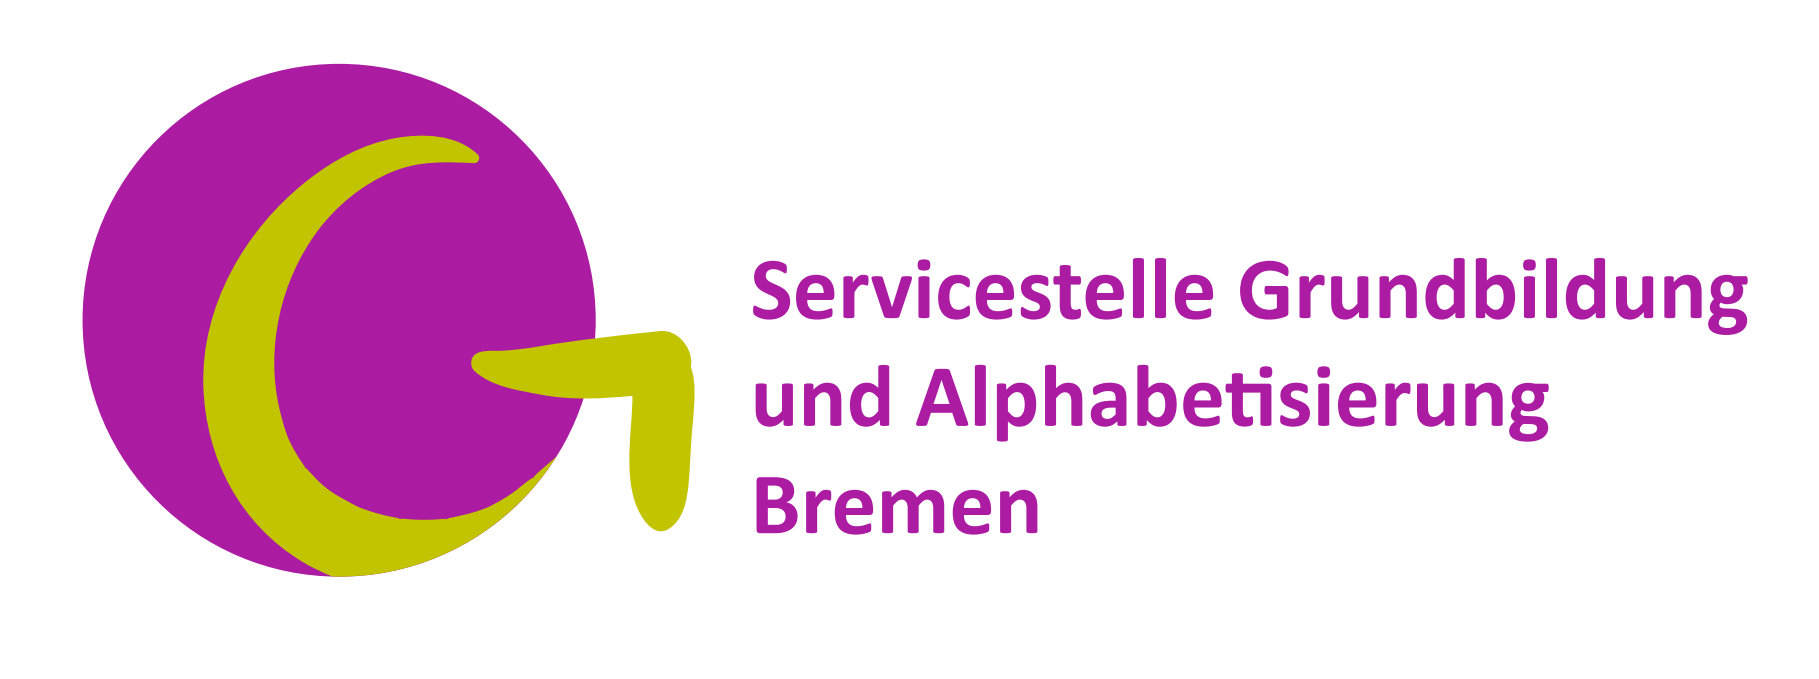 Logo Servicestelle Grundbildung und Alphabetisierung Bremen